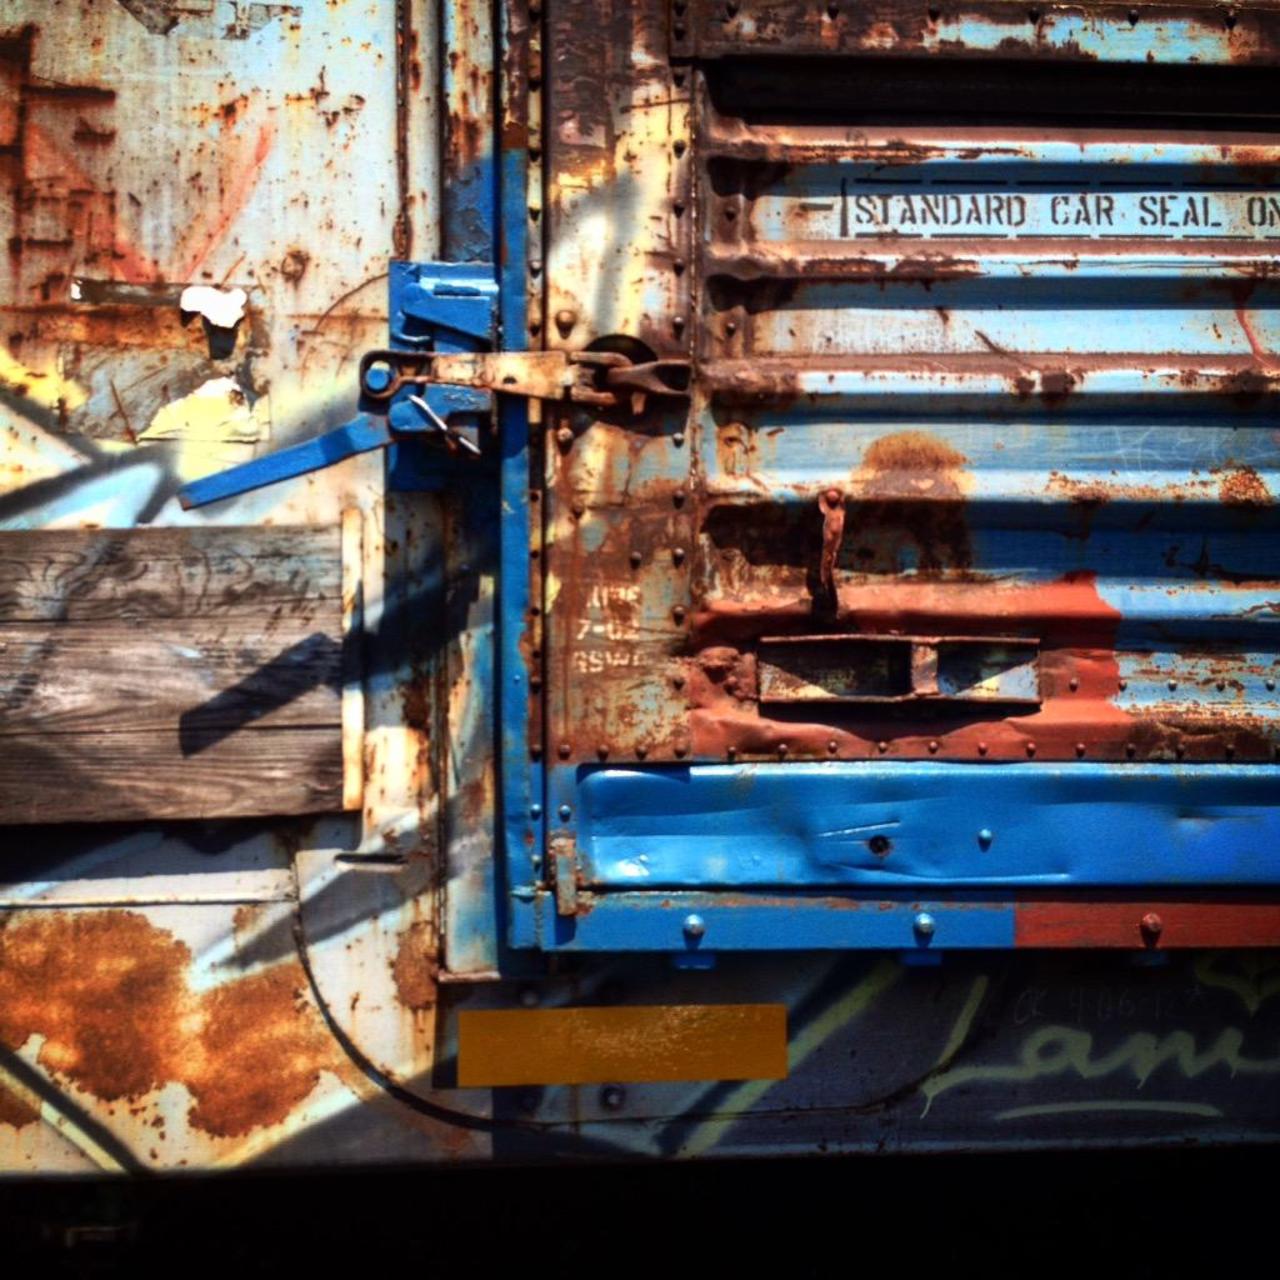 RT @punkrockgirlart: Standard Car
Seal On.

#rust #urbex #art #graffiti #train #streetart #punkrockgirlart #urbanexploration http://t.co/bQZj17Bm2f